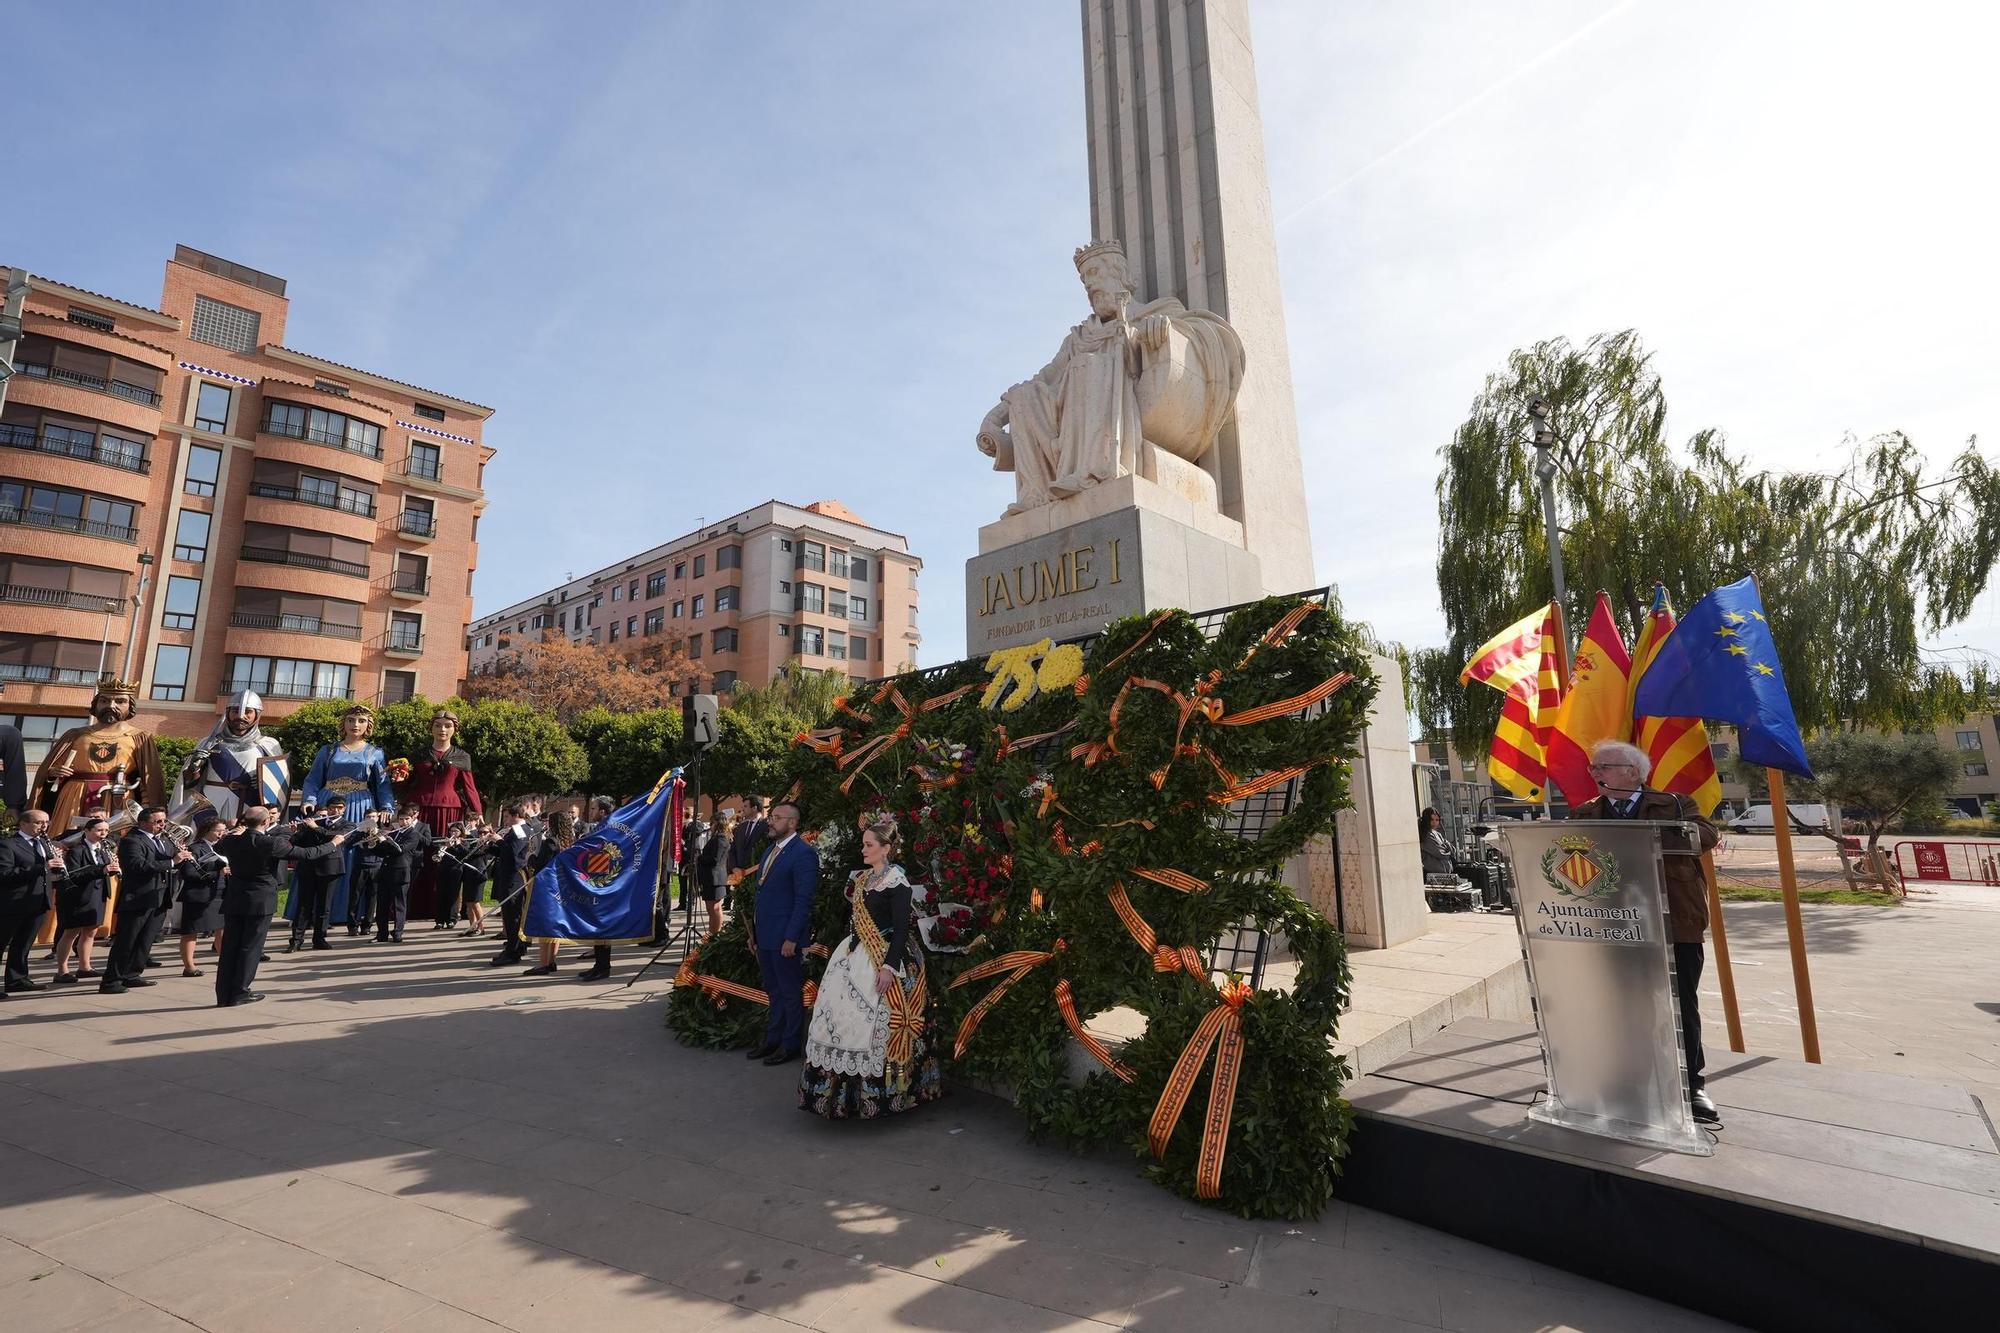 Las mejores imágenes del homenaje a Jaume I, que inicia los actos para celebrar los 750 años de Vila-real